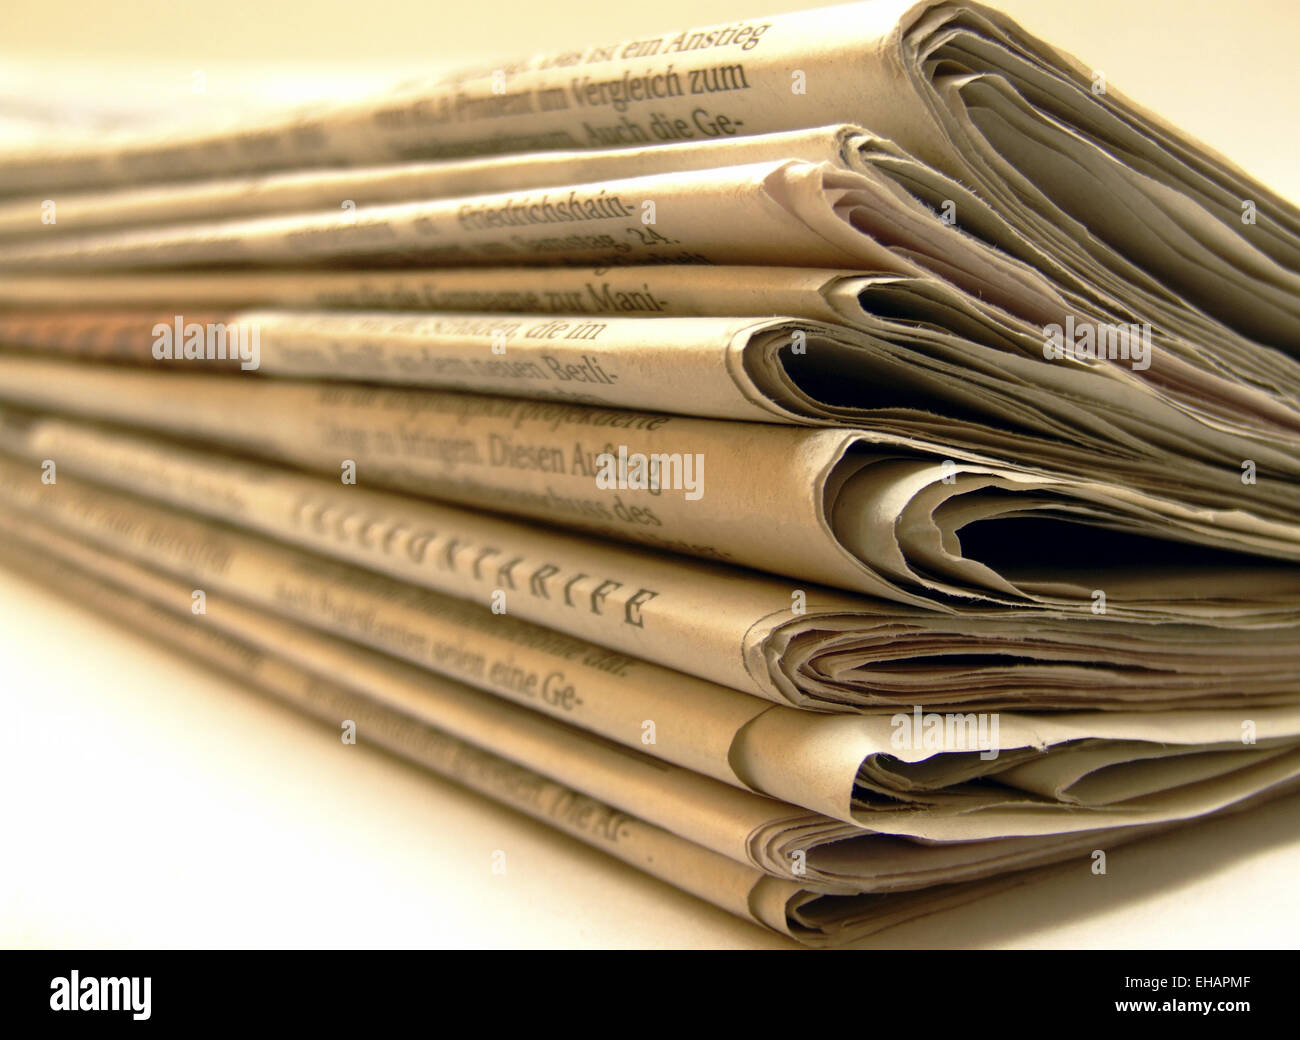 Stapel Zeitungen / Prensa Foto de stock